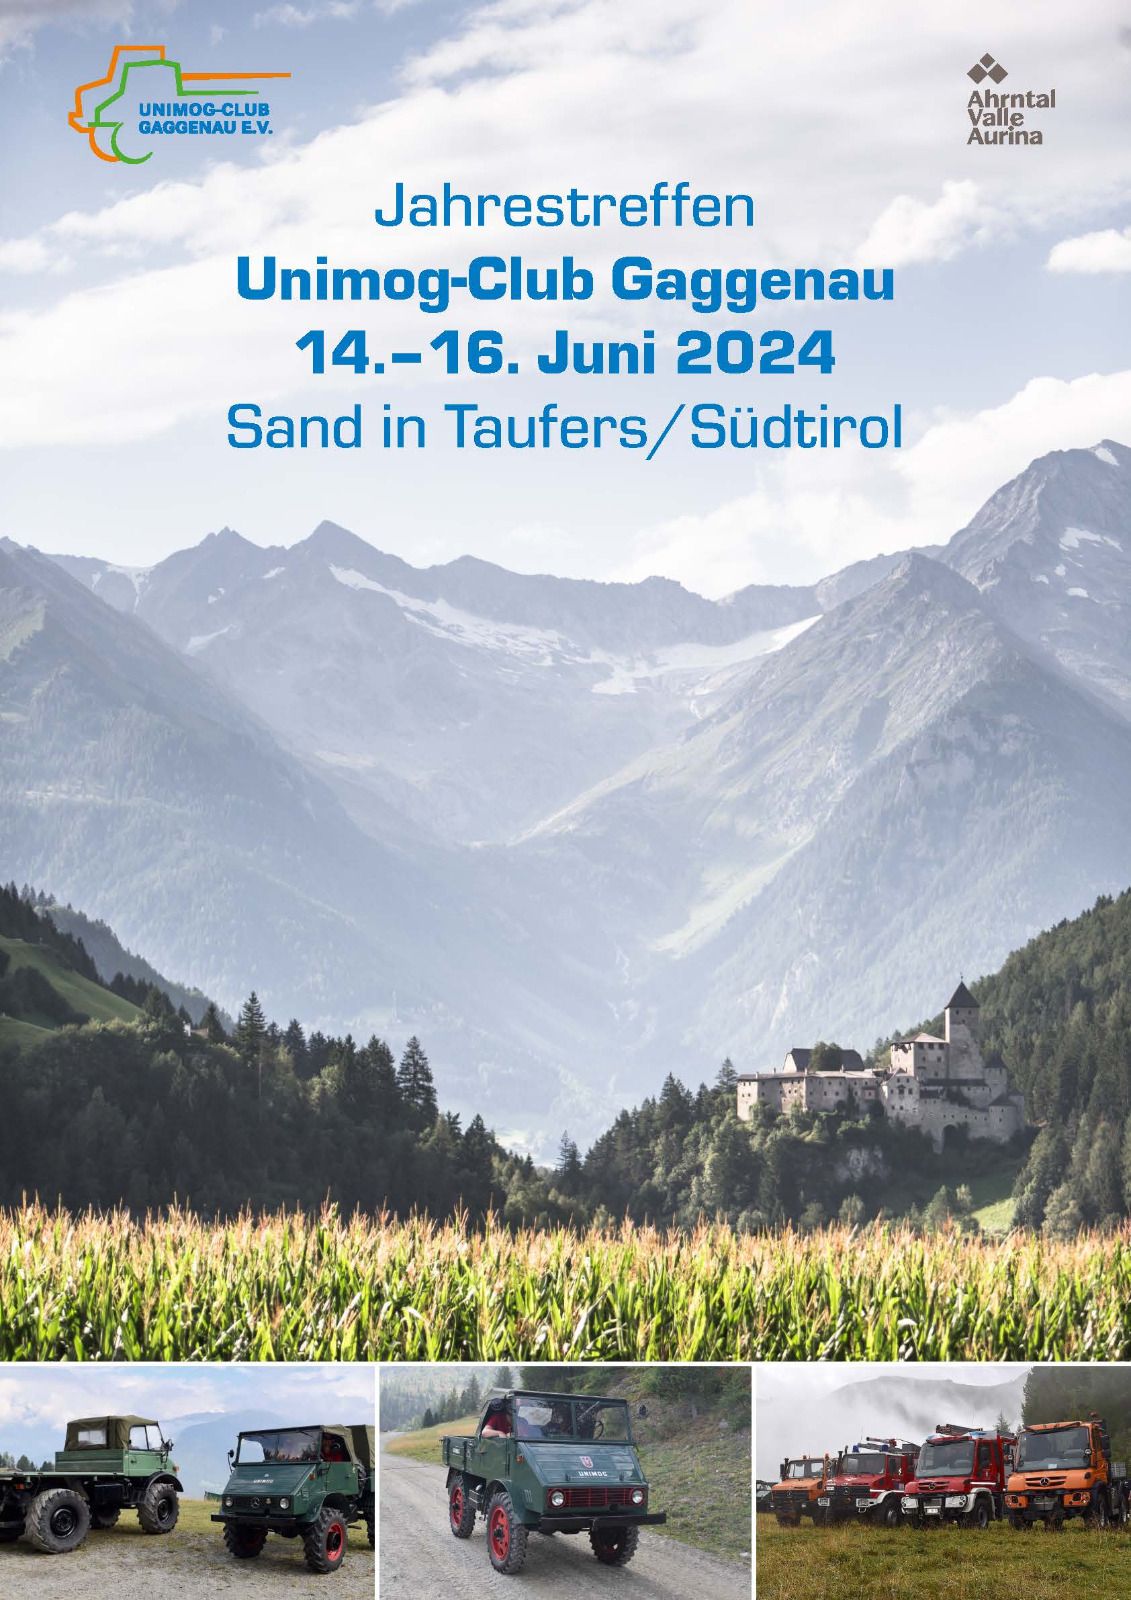 UCG Jahrestreffen in Südtirol / Sand in Taufers